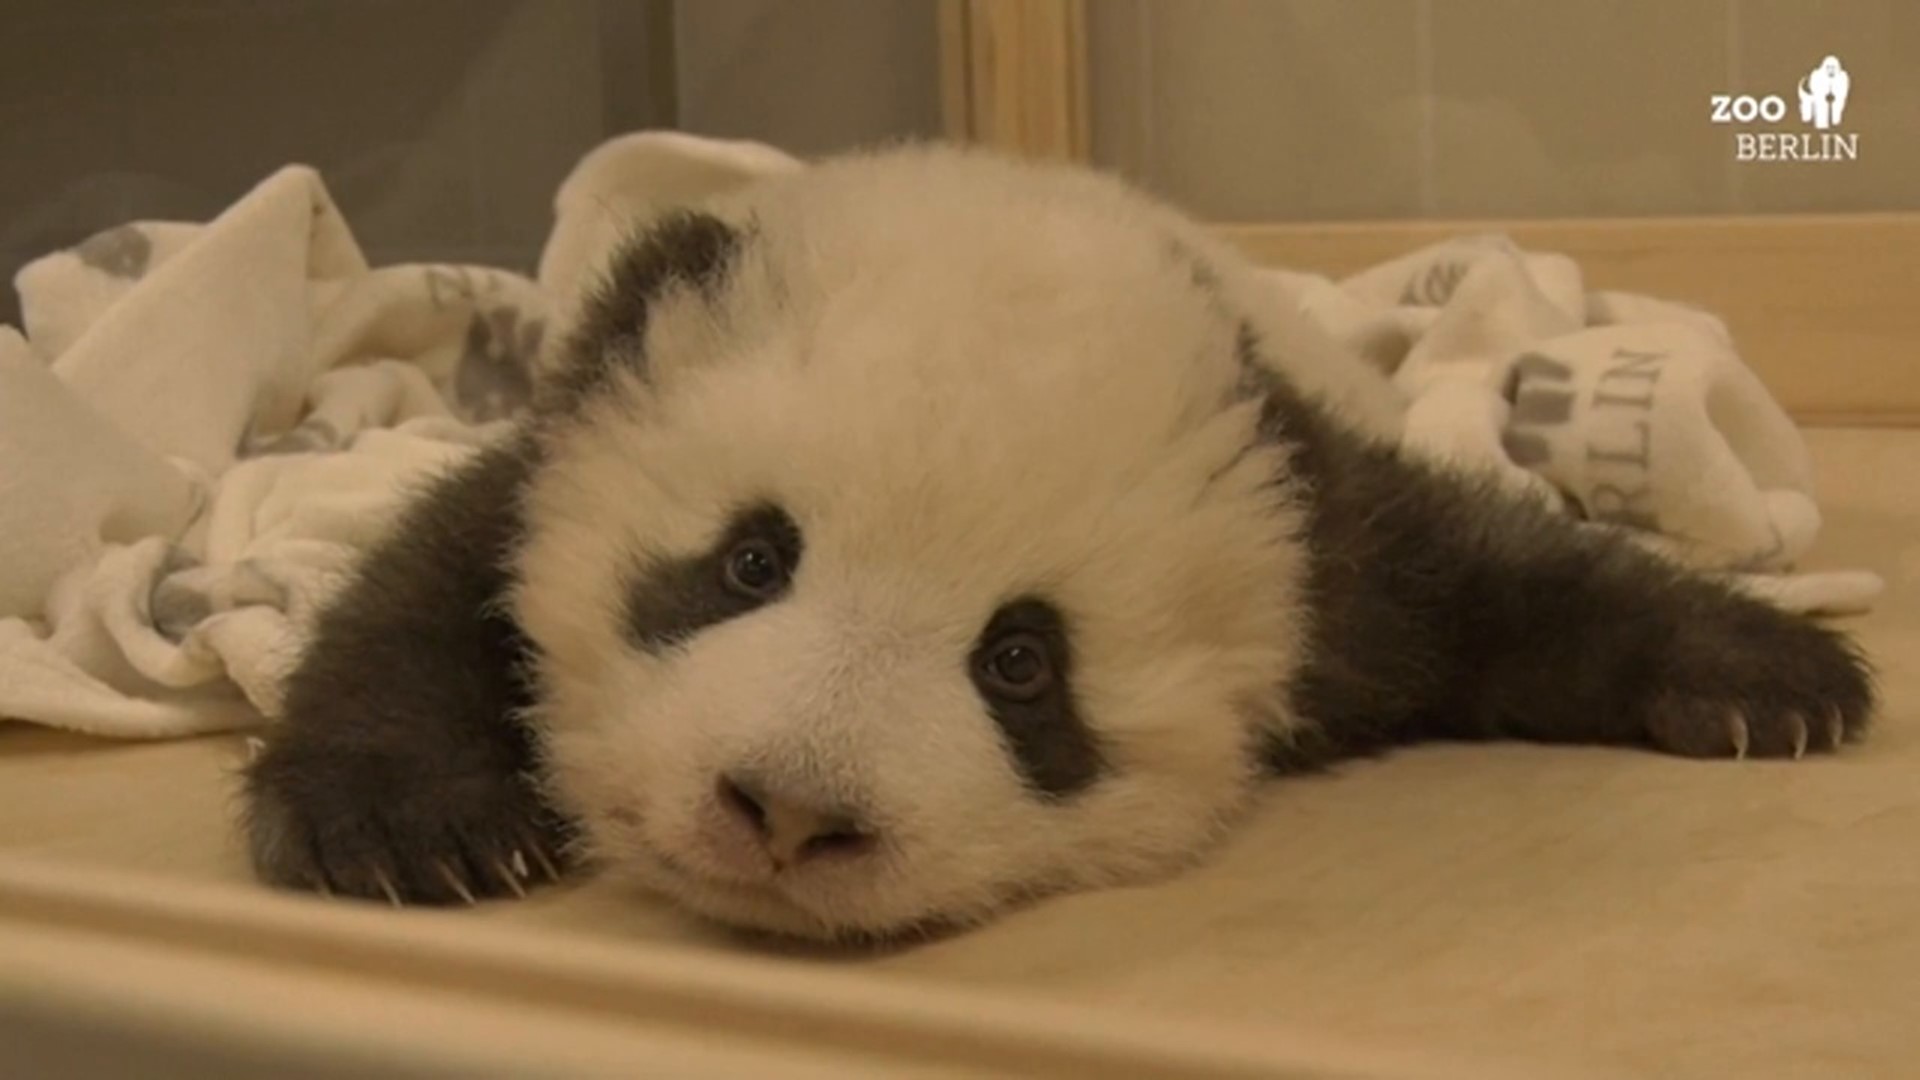 sleeping baby pandas